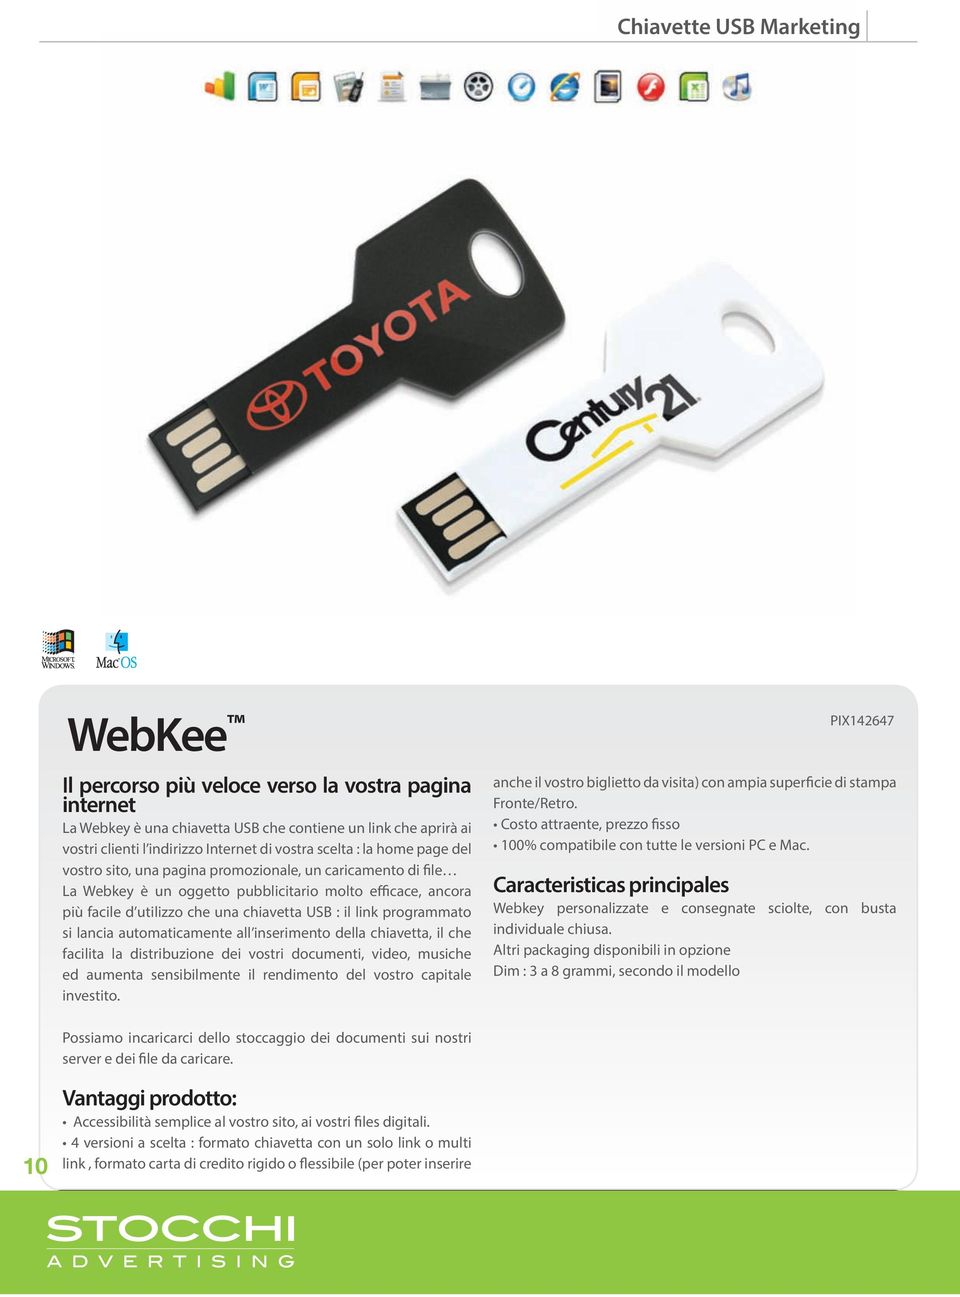 rimane in modo permanente La associata Webkey alla è una vostra chiavetta comunicazione USB che contiene promozionale.